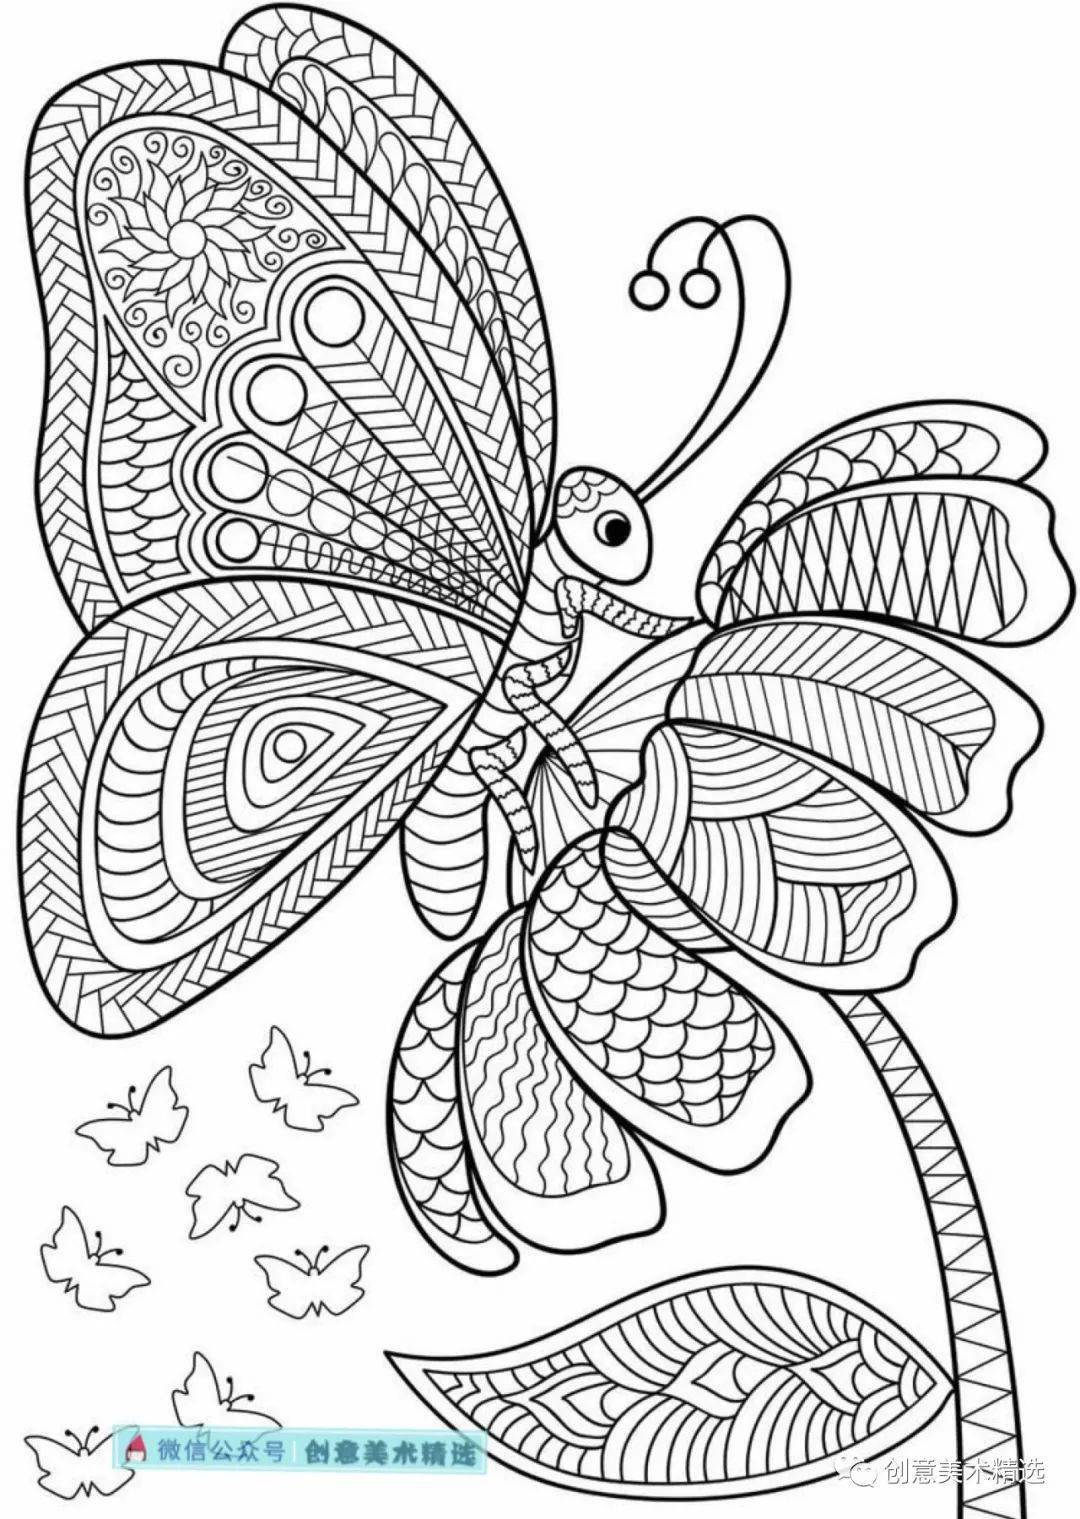 黑白线描临摹素材漂亮的蝴蝶主题线描装饰画